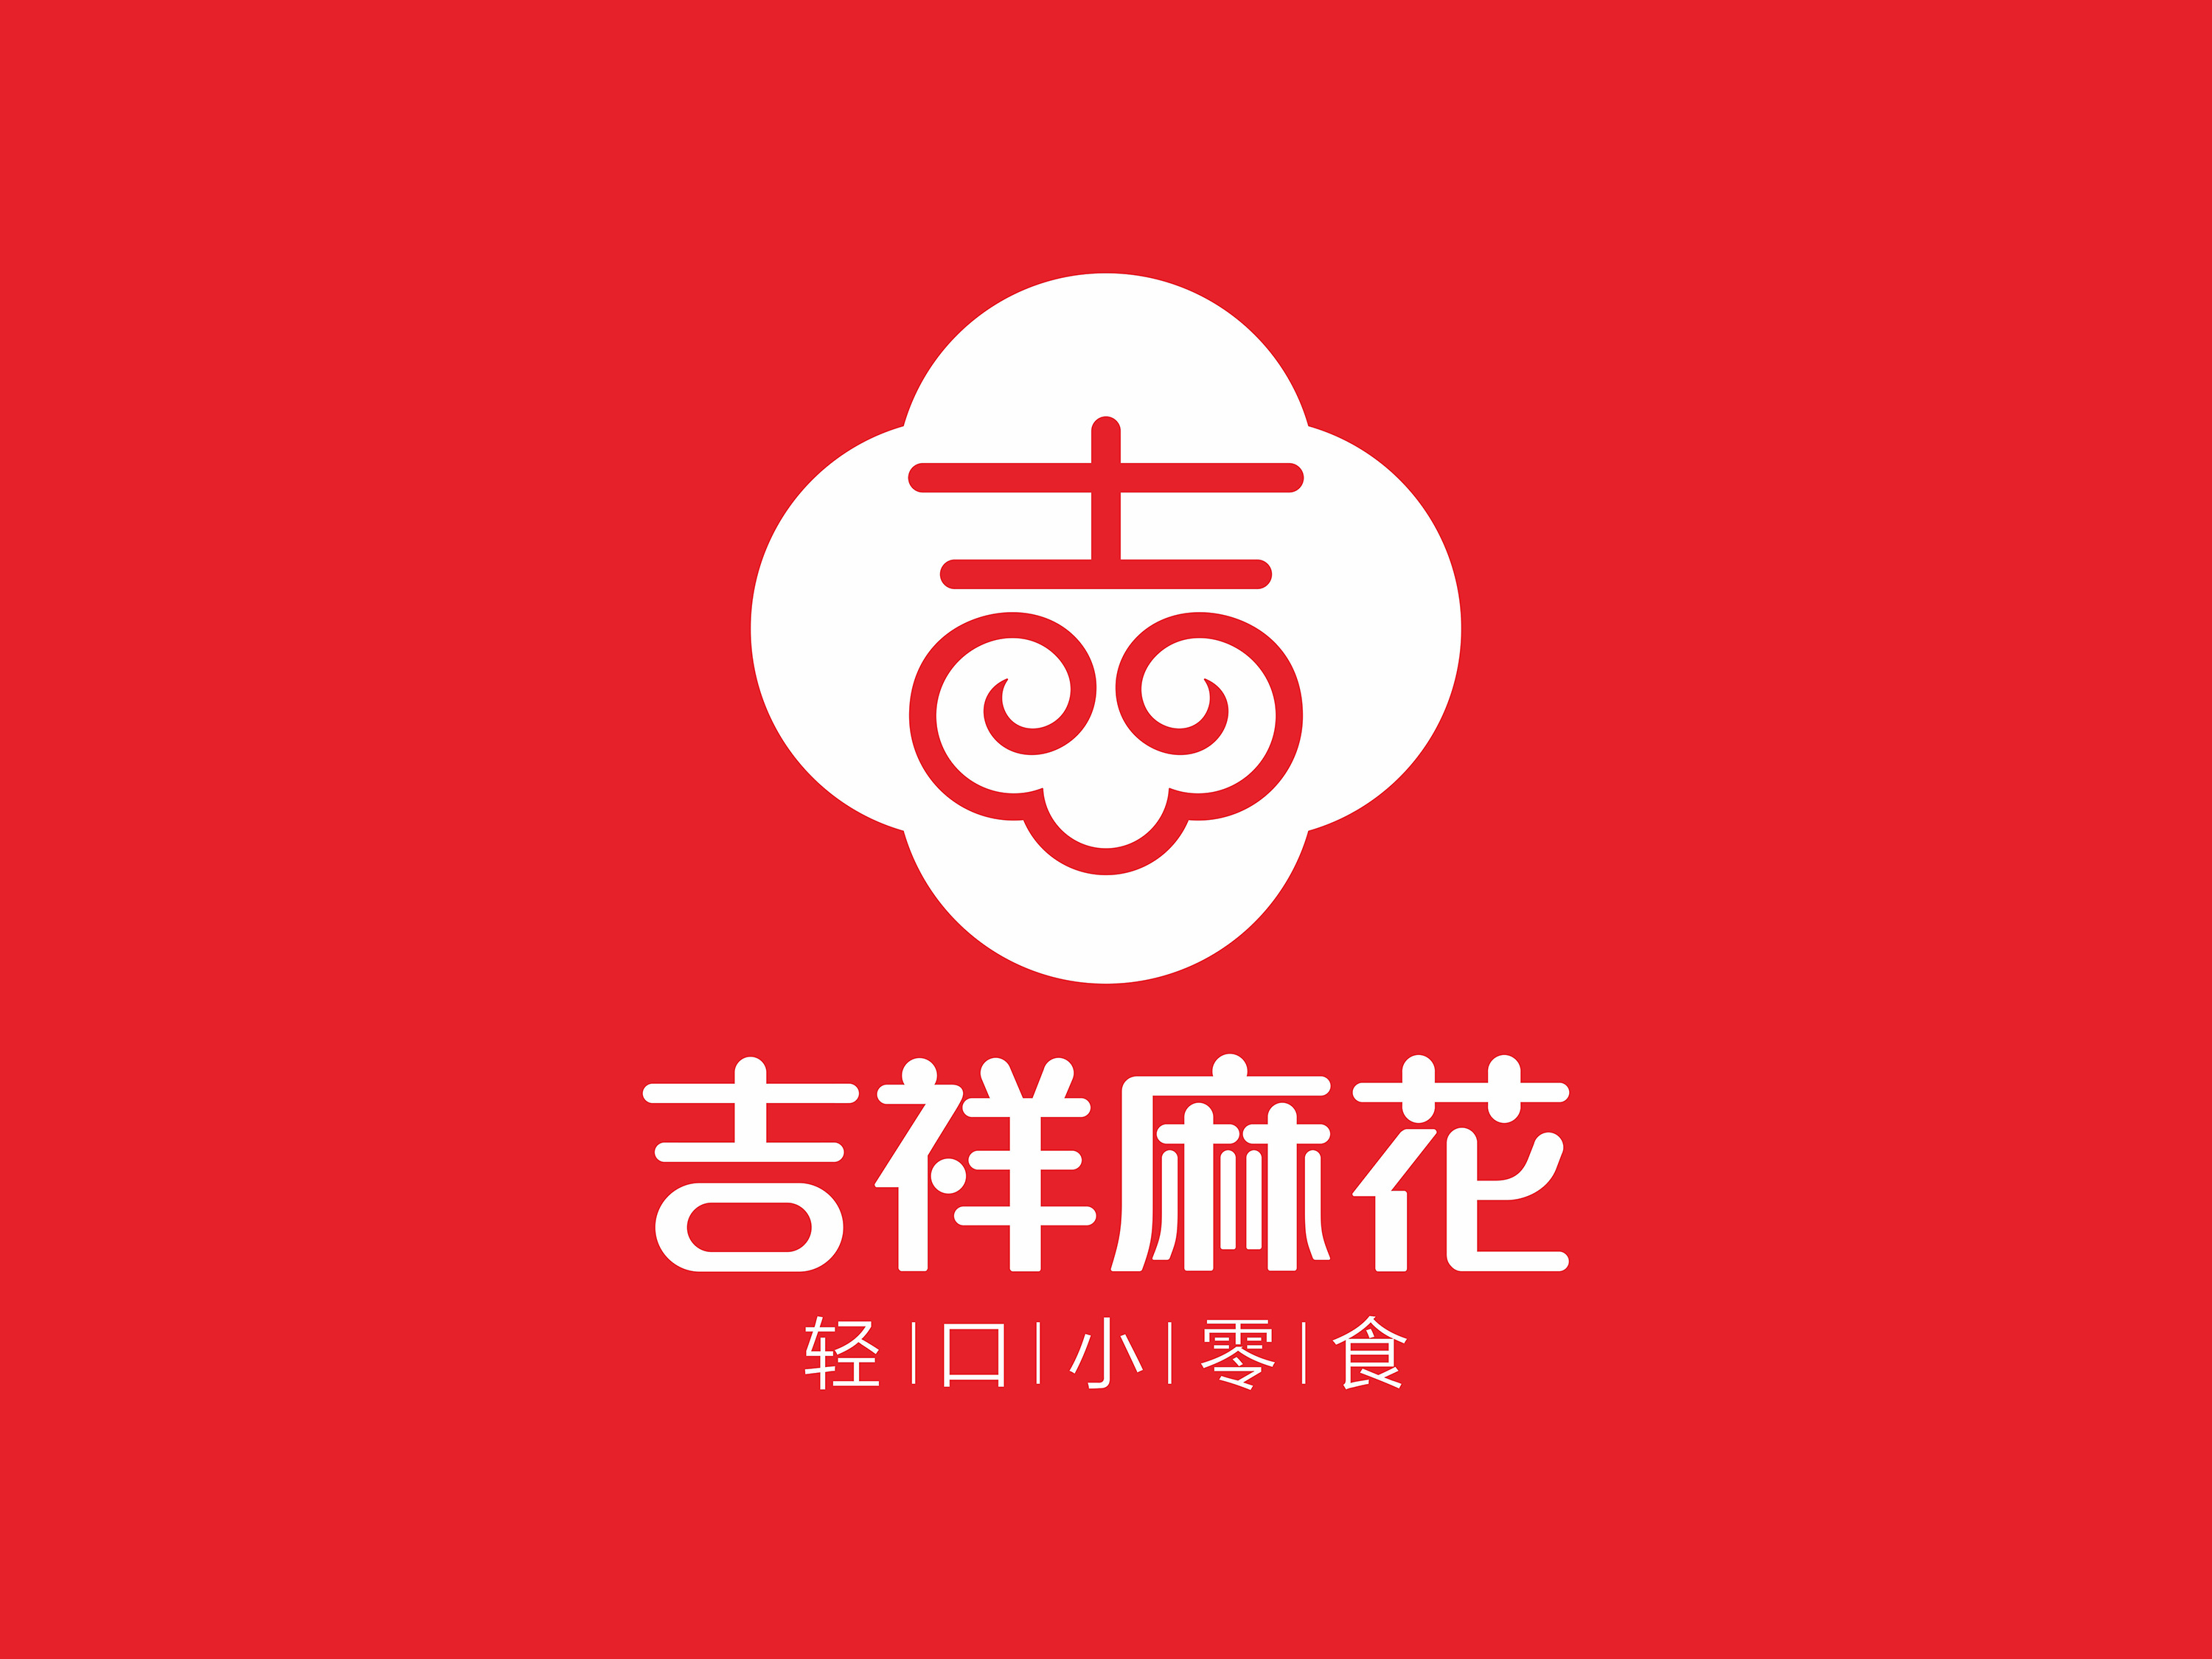 吉祥麻花品牌logo